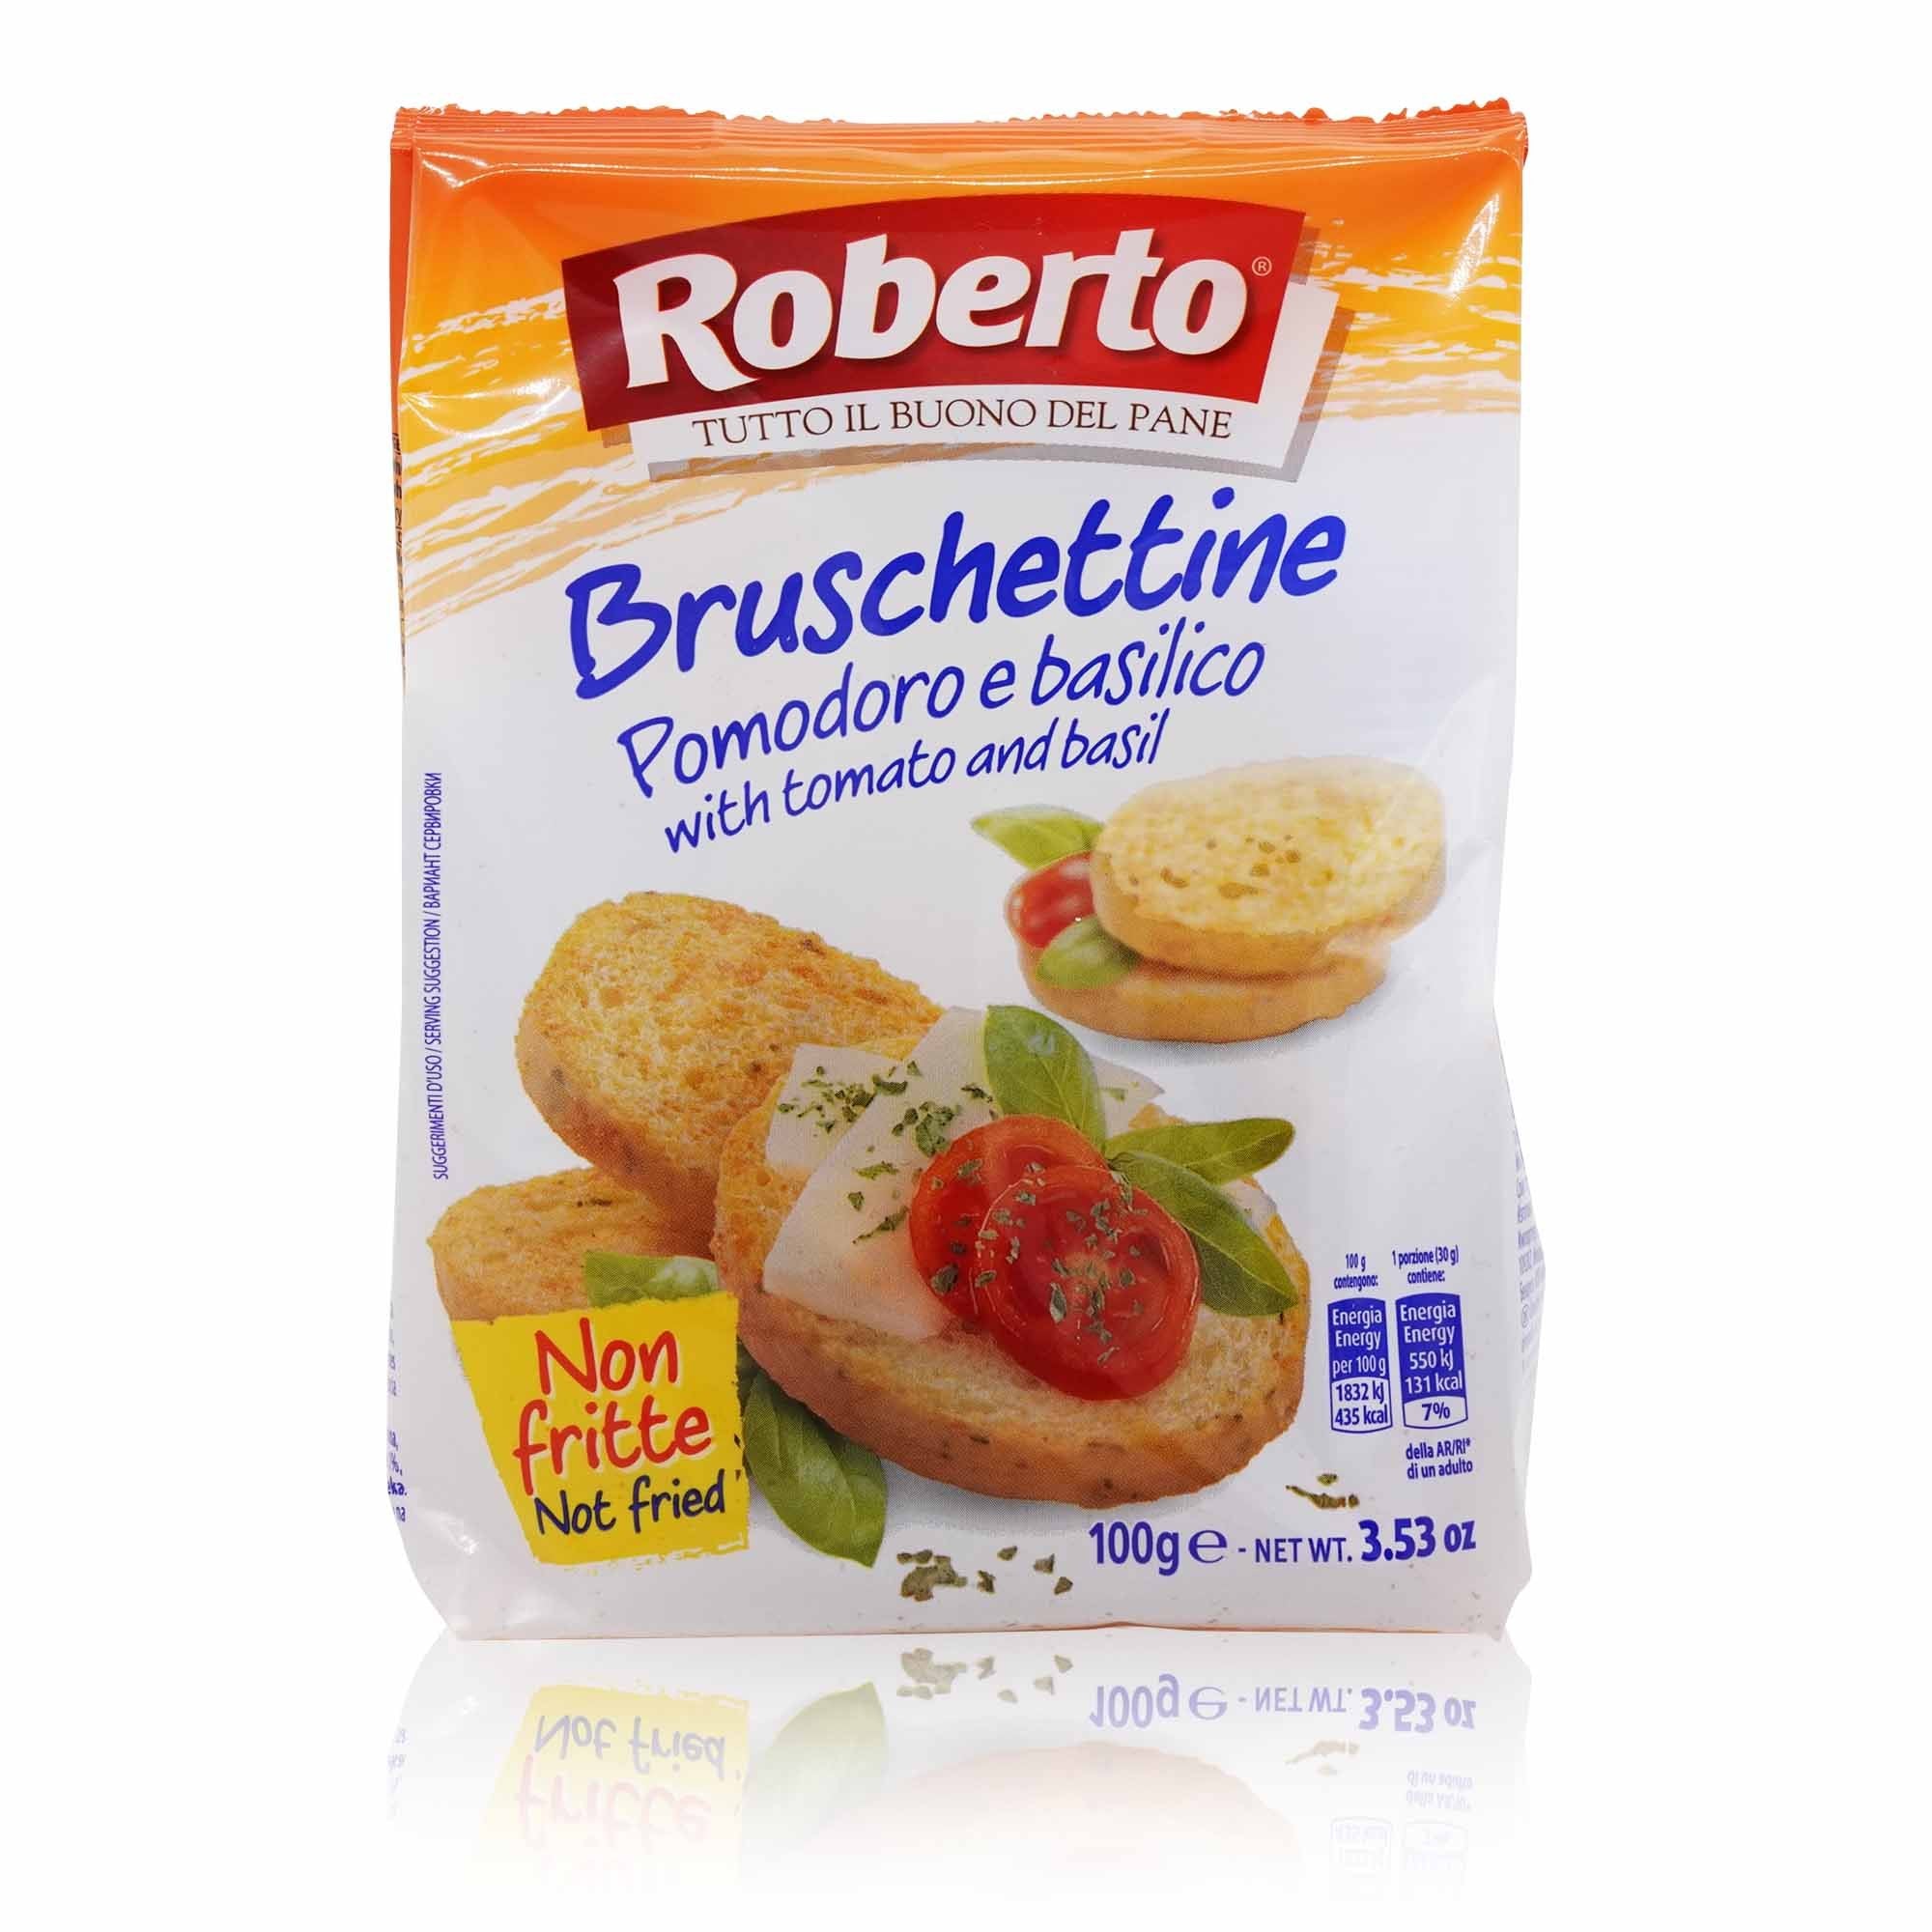 ROBERTO Bruschettine Pomodoro e basilico – Tomate-Basilikumbruschette - 0,100kg